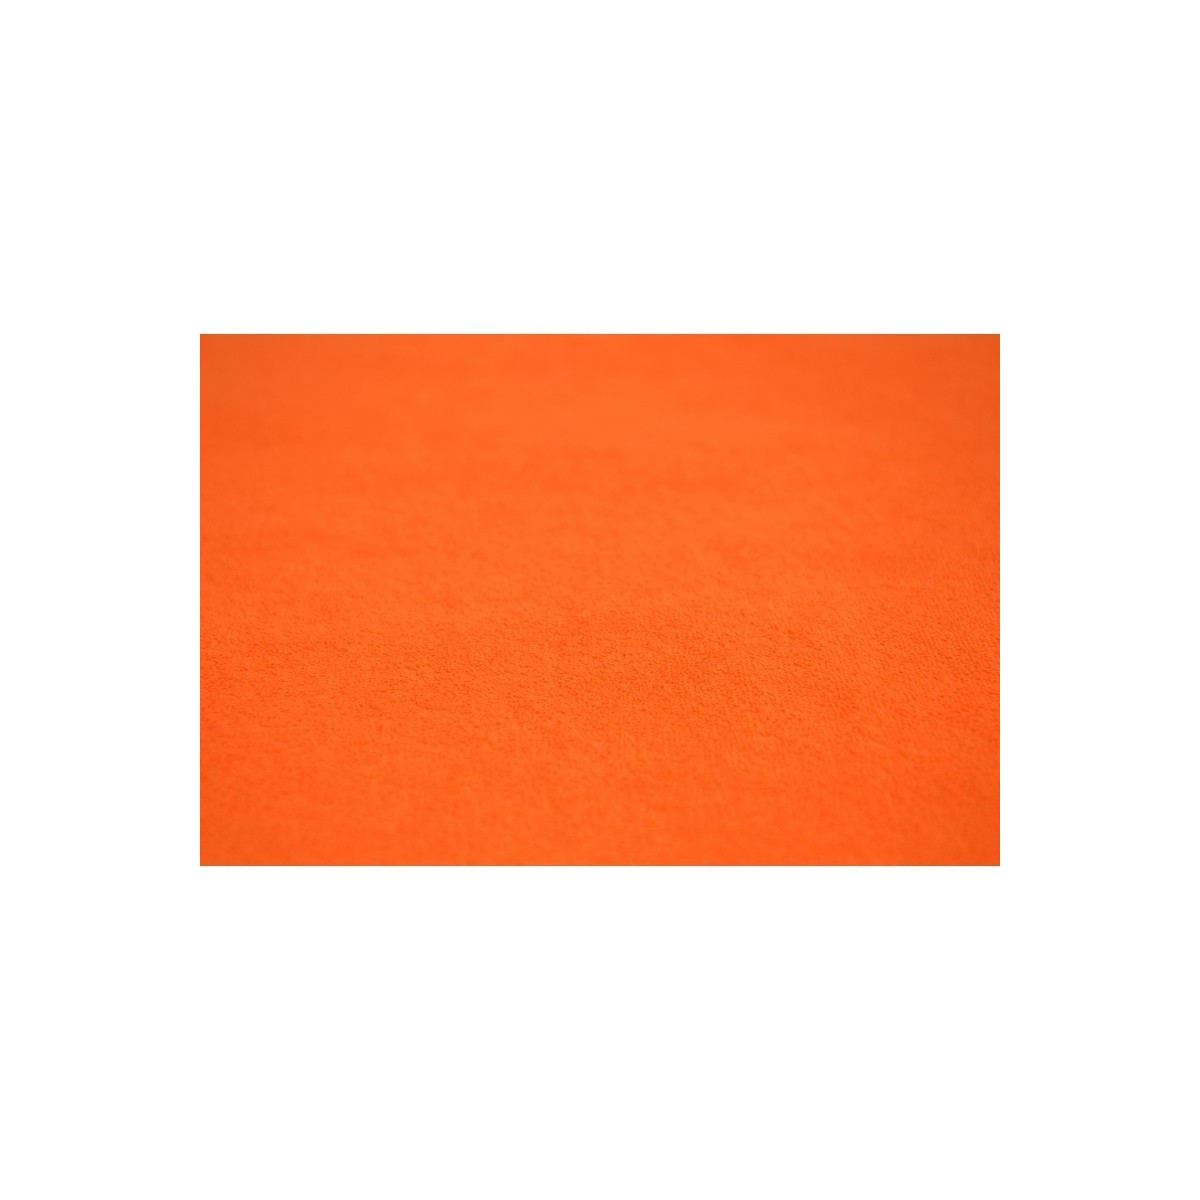  Pościel frotte gruba 180x200 3-częściowa pomarańczowa